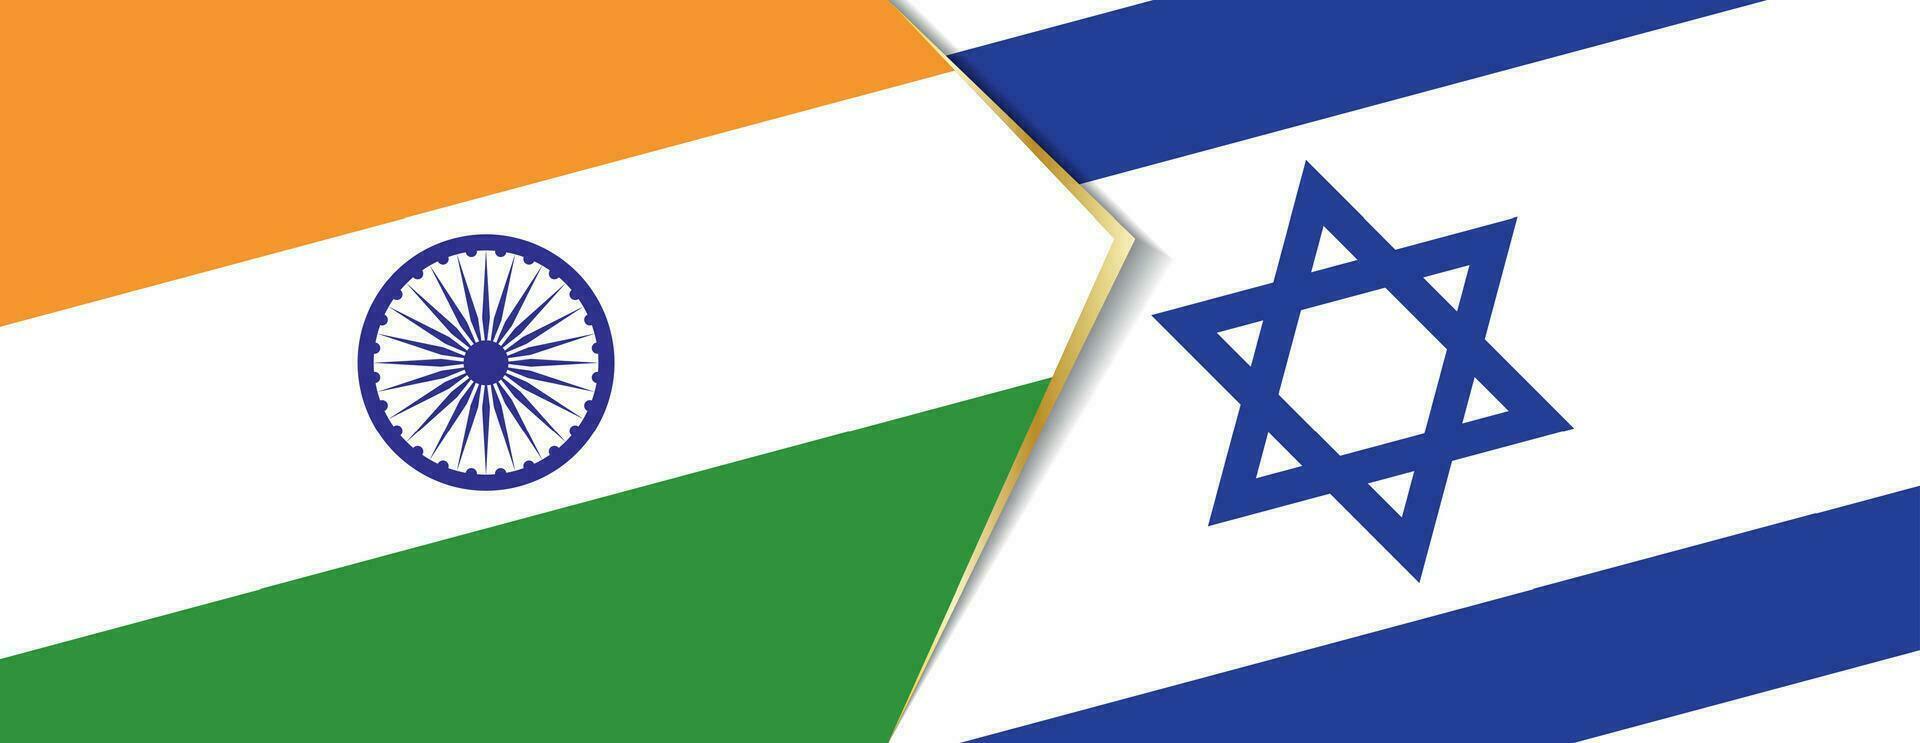 Indien och Israel flaggor, två vektor flaggor.